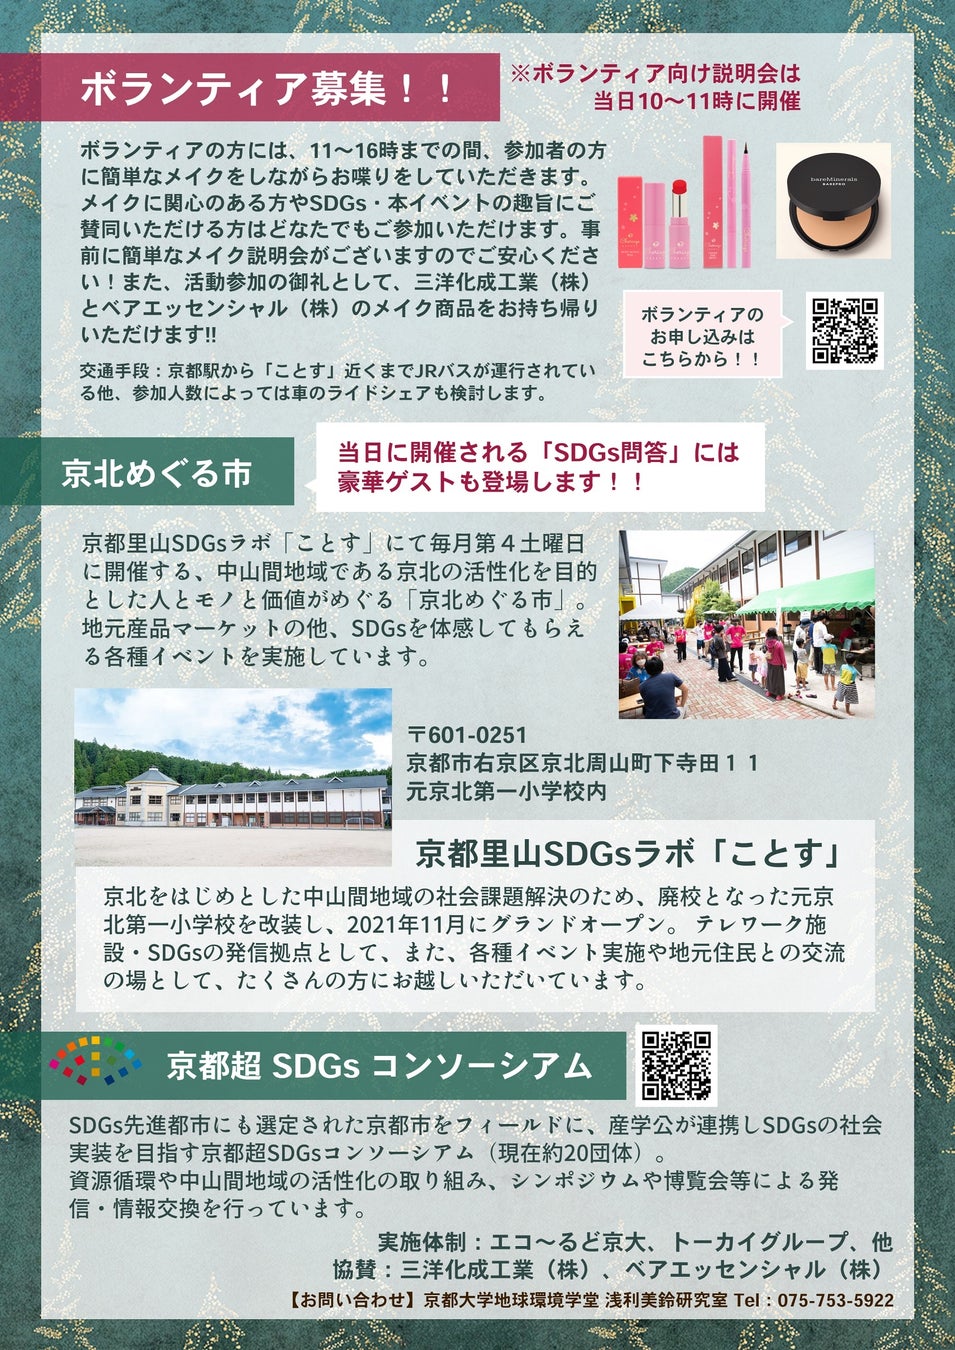 【ベアミネラル】「京都超 SDGs コンソーシアム」とコラボレーション京都、「京北めぐる市」でのメイクイベントで「プラチナ世代」*に向け、ベアミネラルを通して笑顔を届けるのサブ画像2